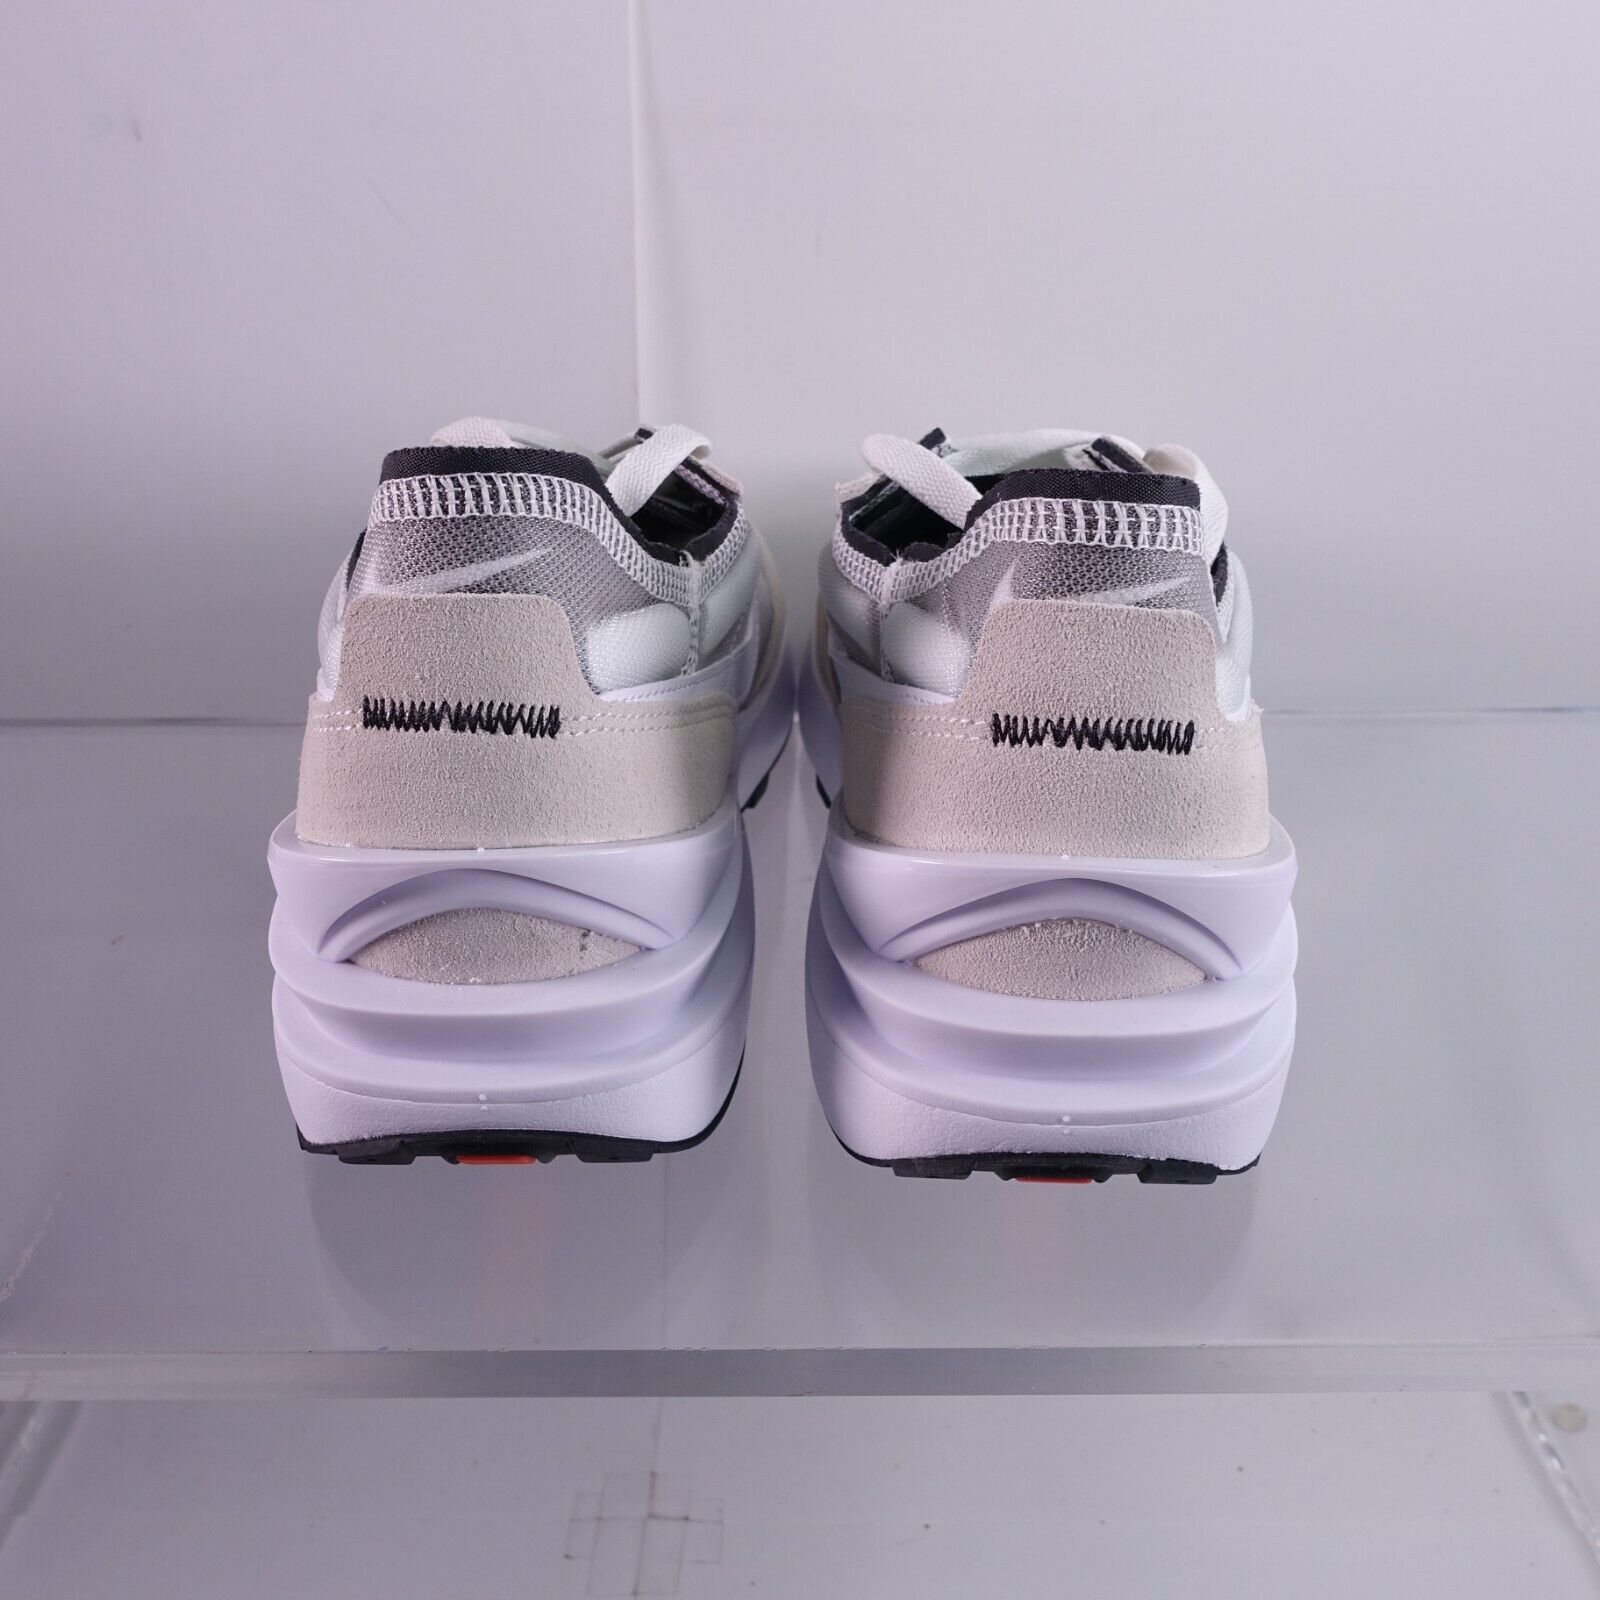 Nike Men's Waffle One Shoes DA7995-100 Summit White/White-Black Sizes 9.5-15